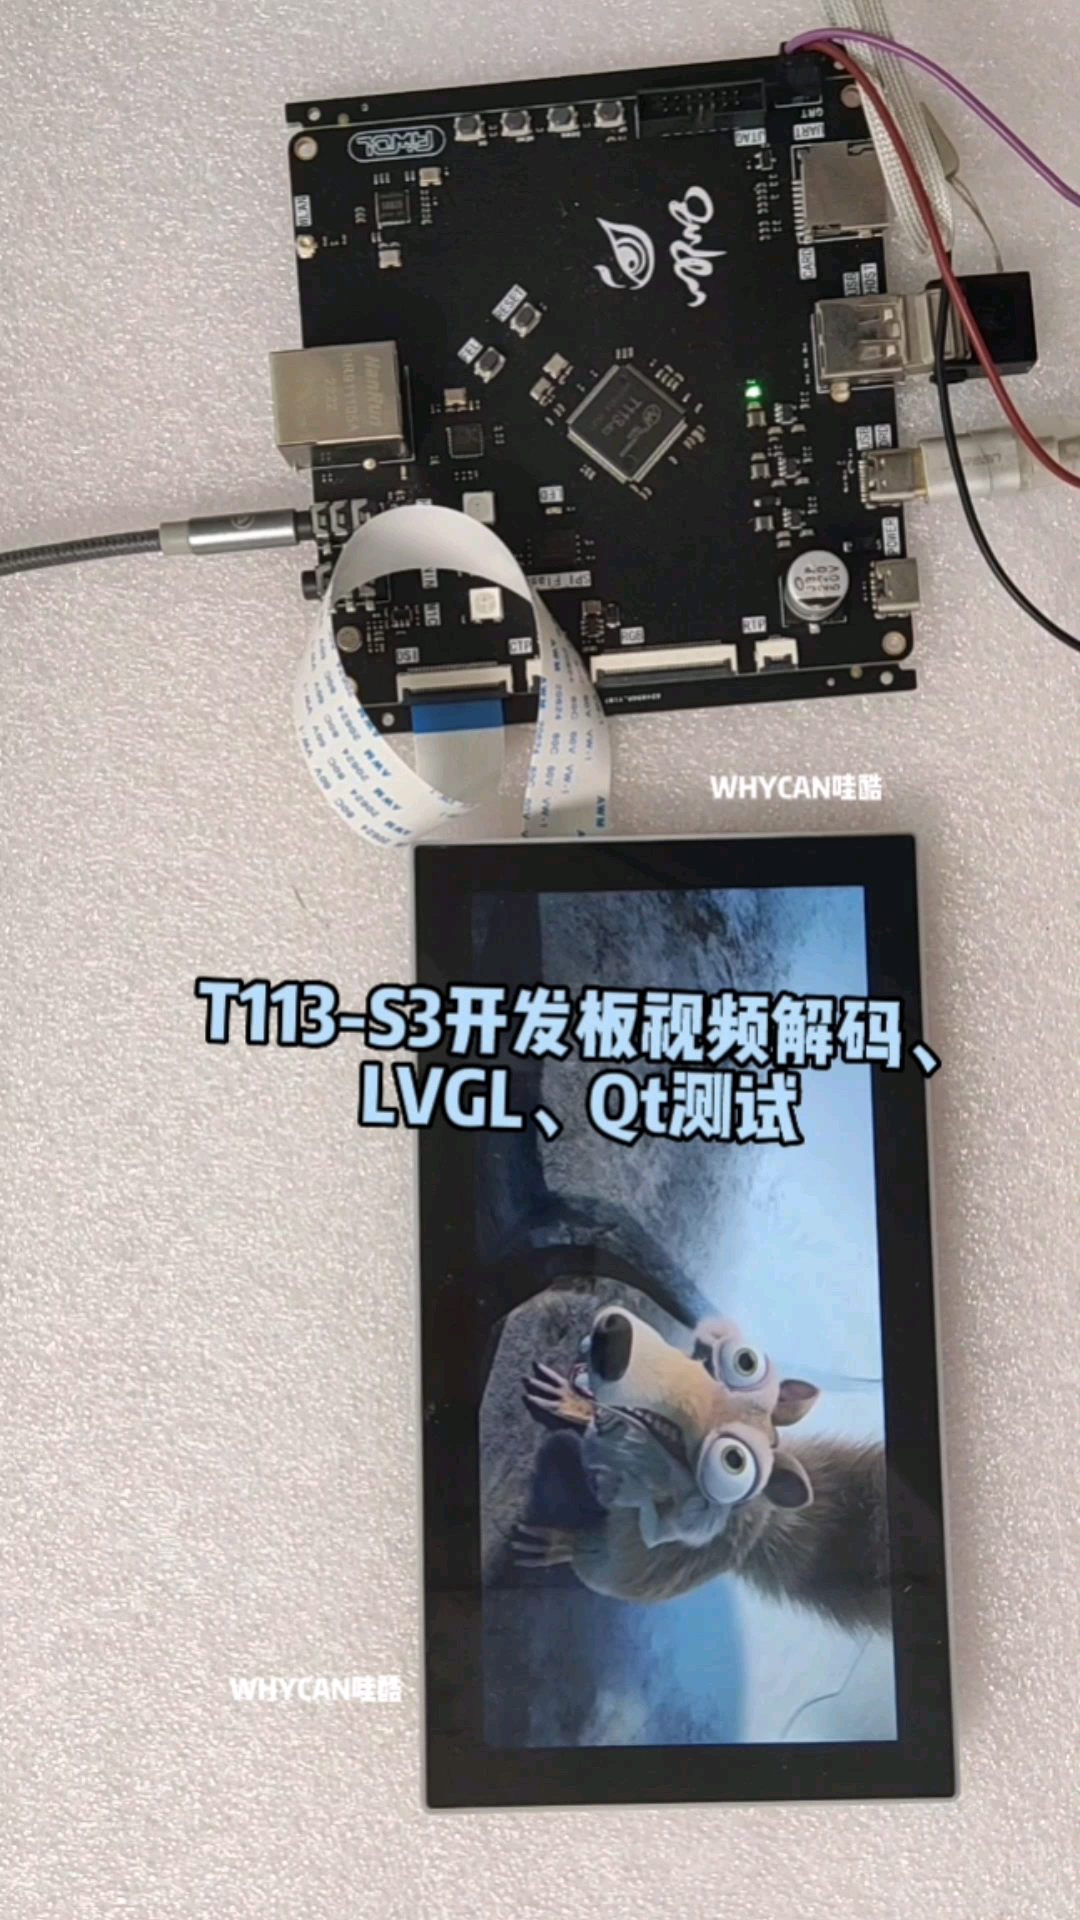 全志科技 T113-S3開發板視頻解碼、LVGL、Qt測試